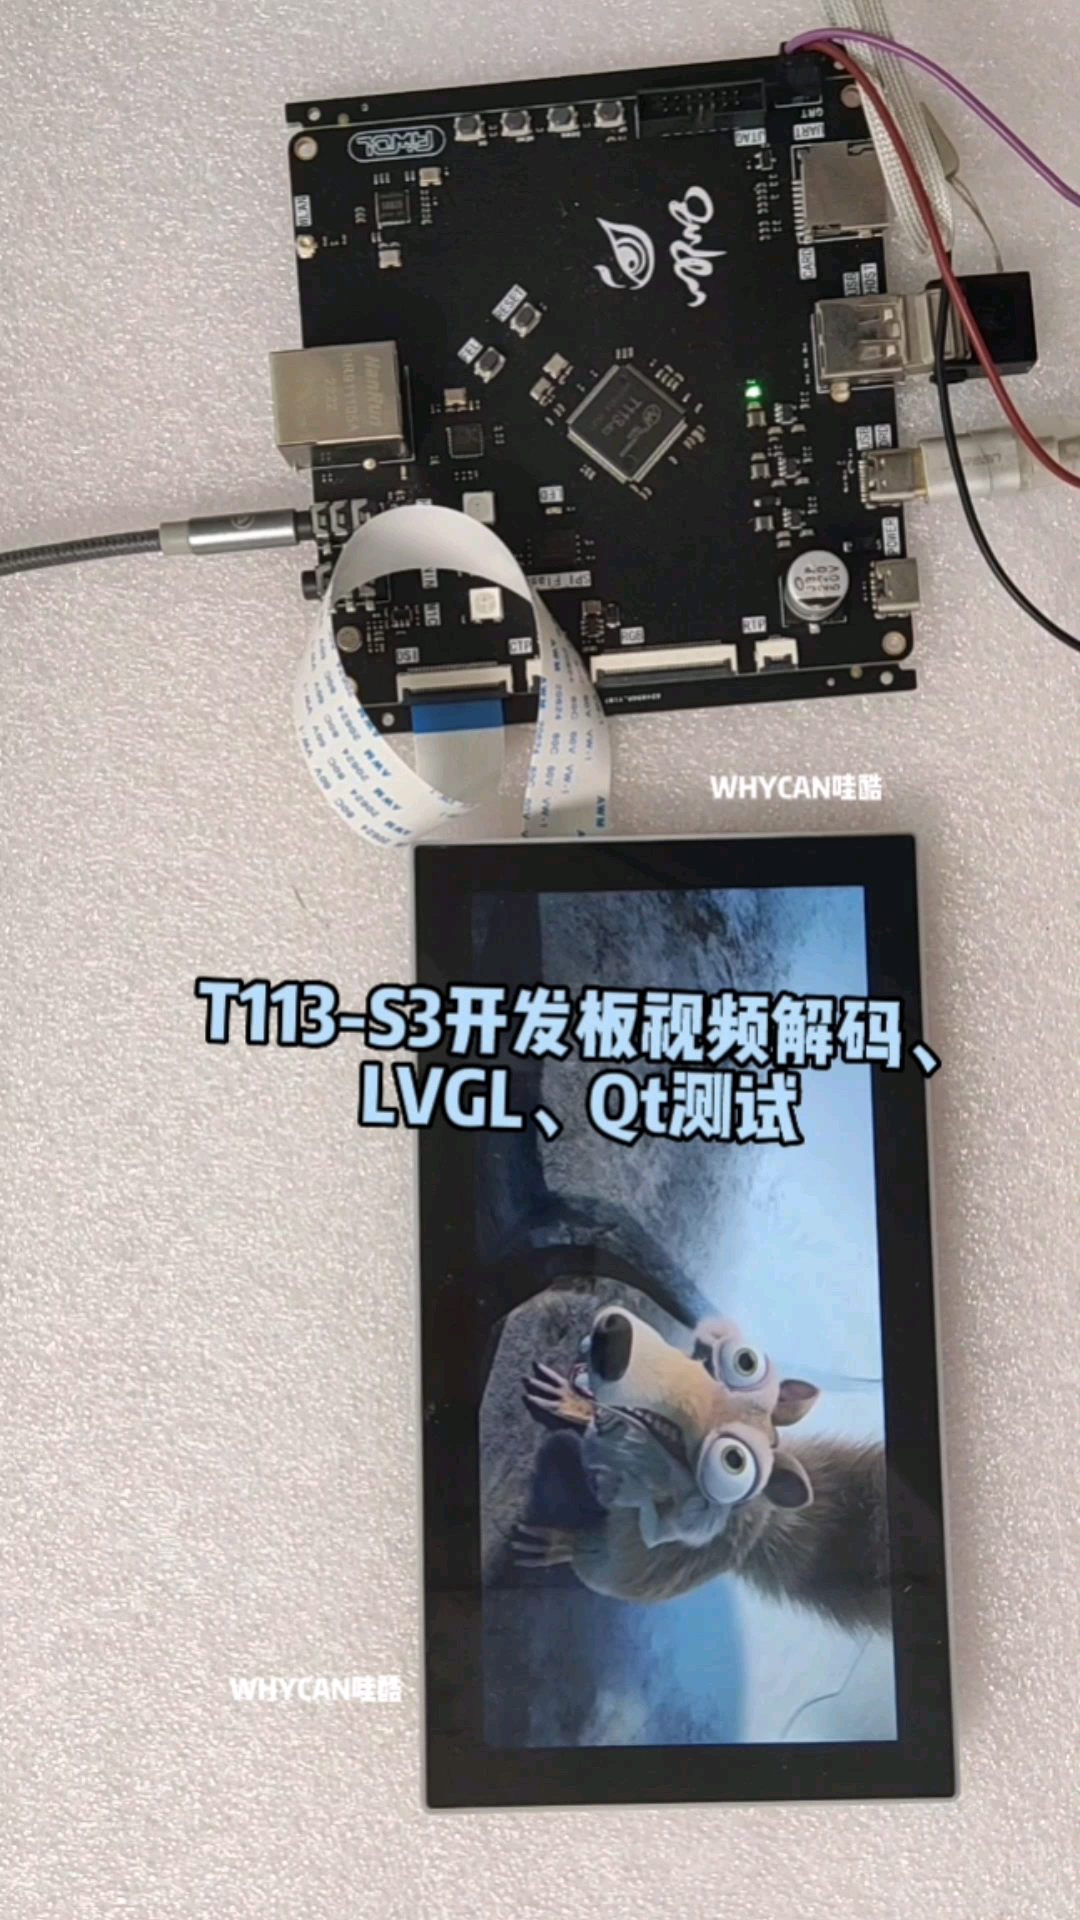 全志科技 T113-S3開發板視頻解碼、LVGL、Qt測試